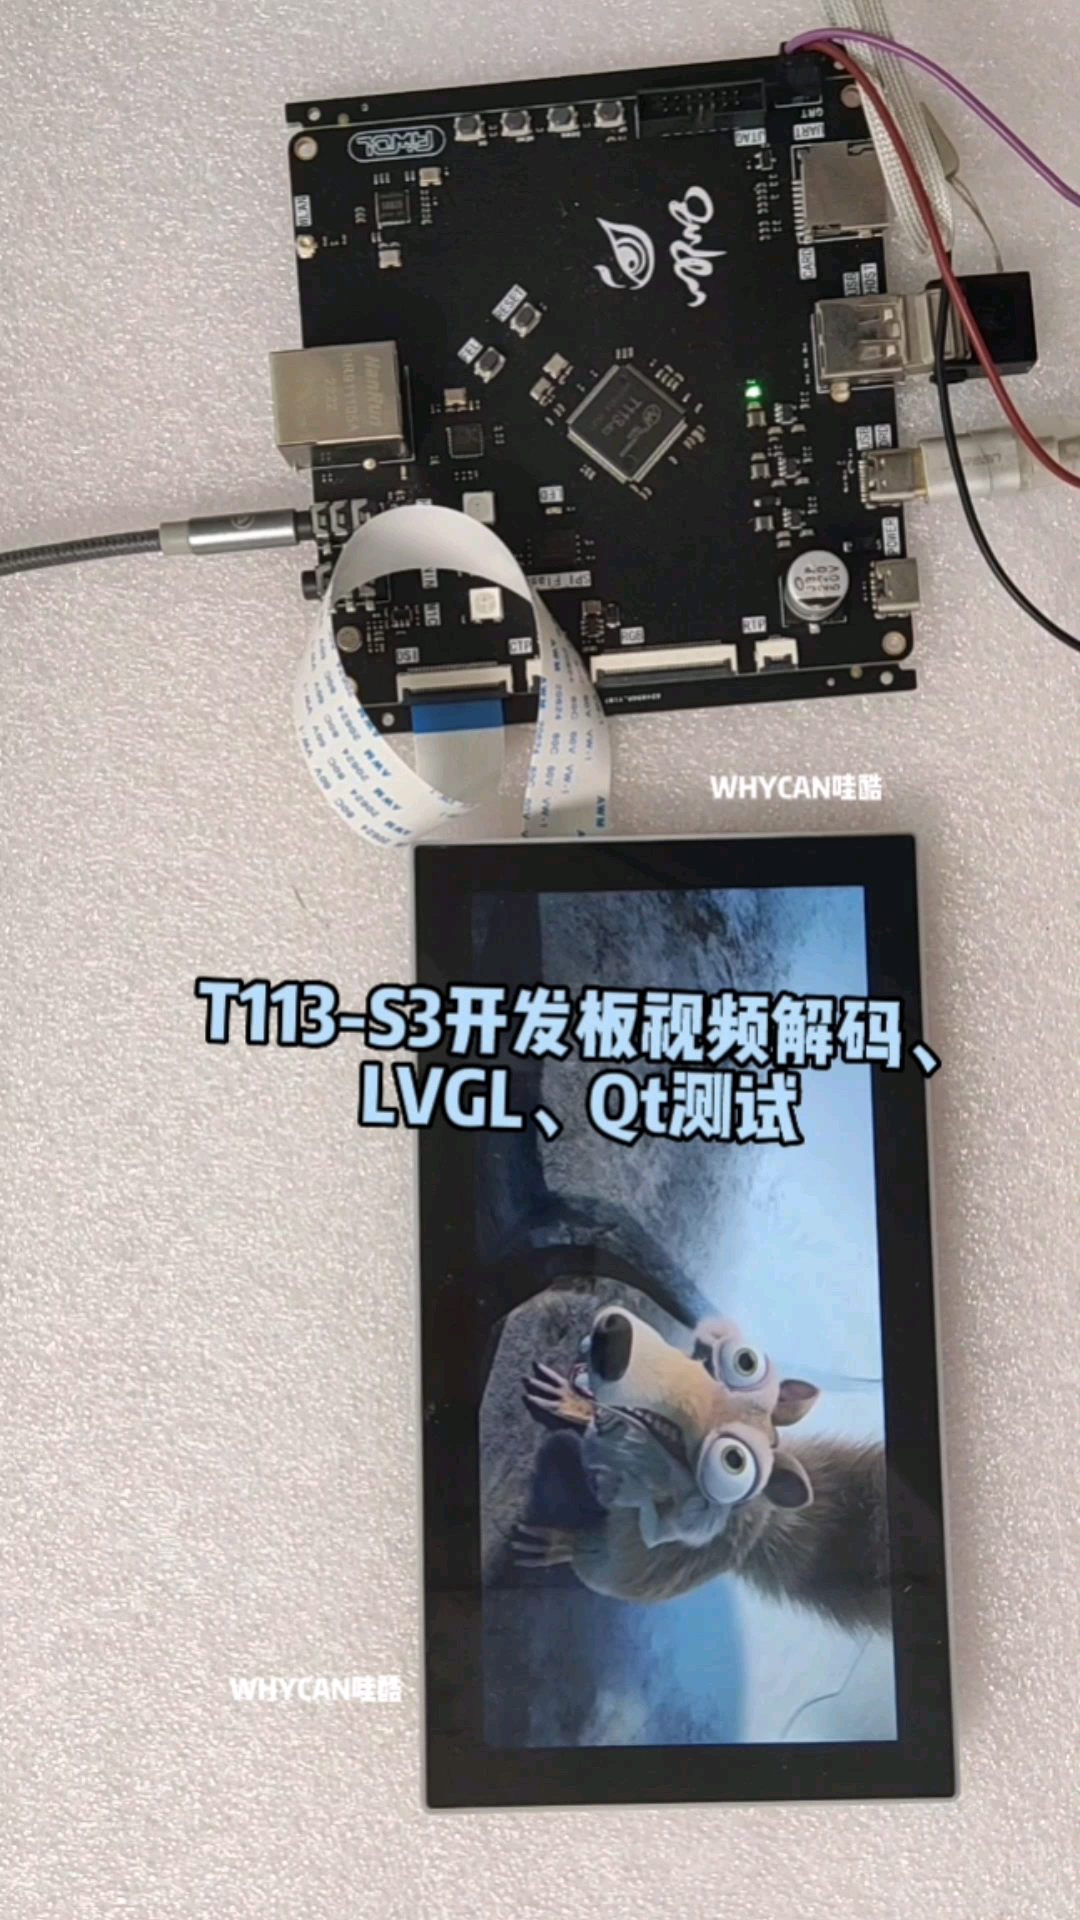 全志科技 T113-S3開發板視頻解碼、LVGL、Qt測試